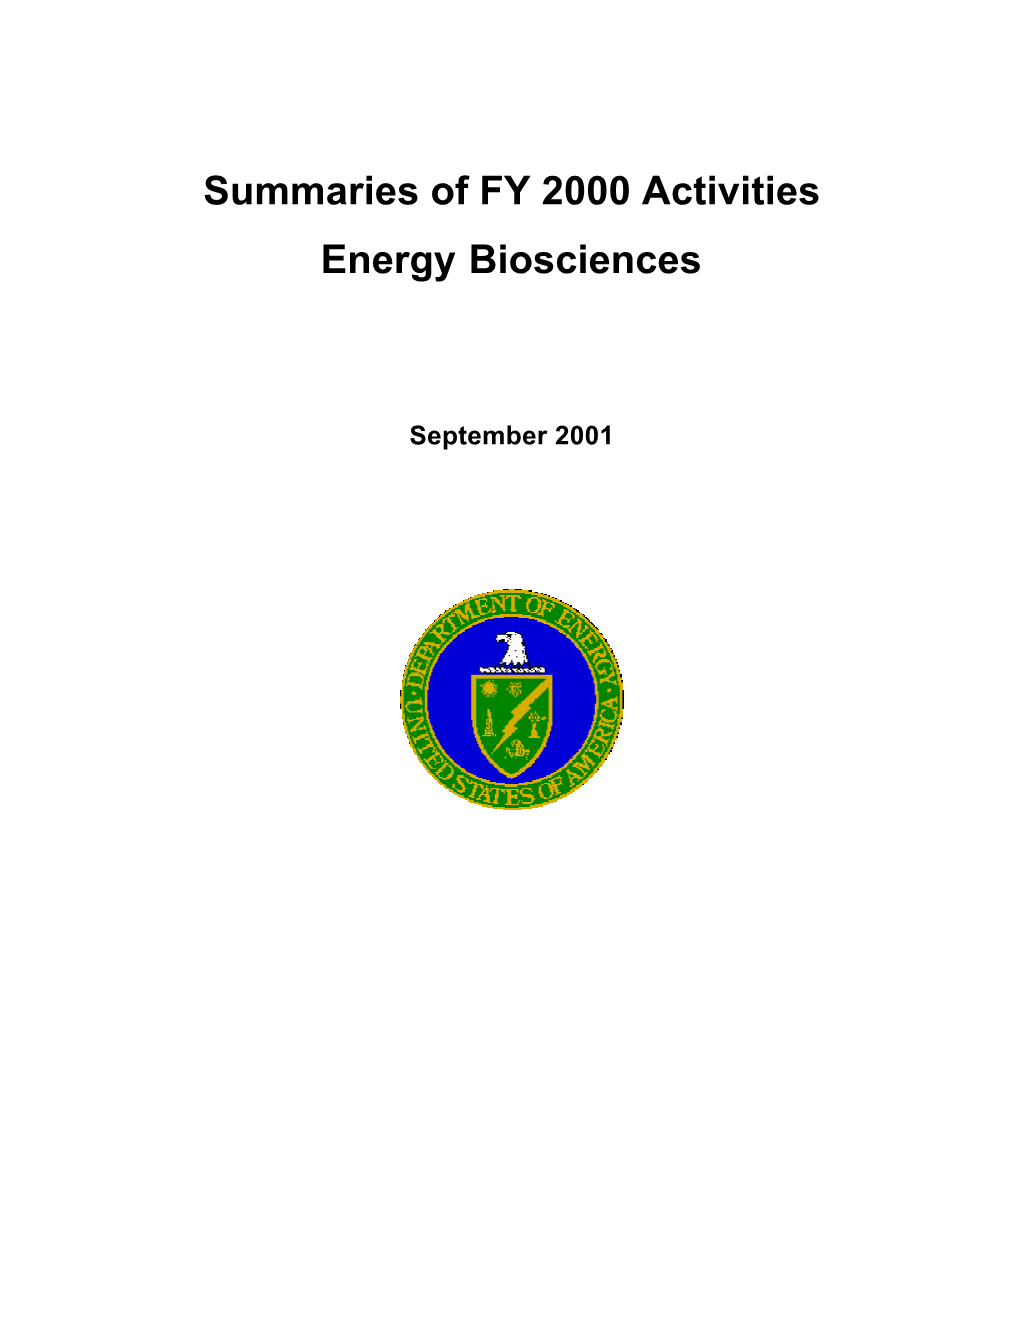 Summaries of FY 2000 Activities Energy Biosciences